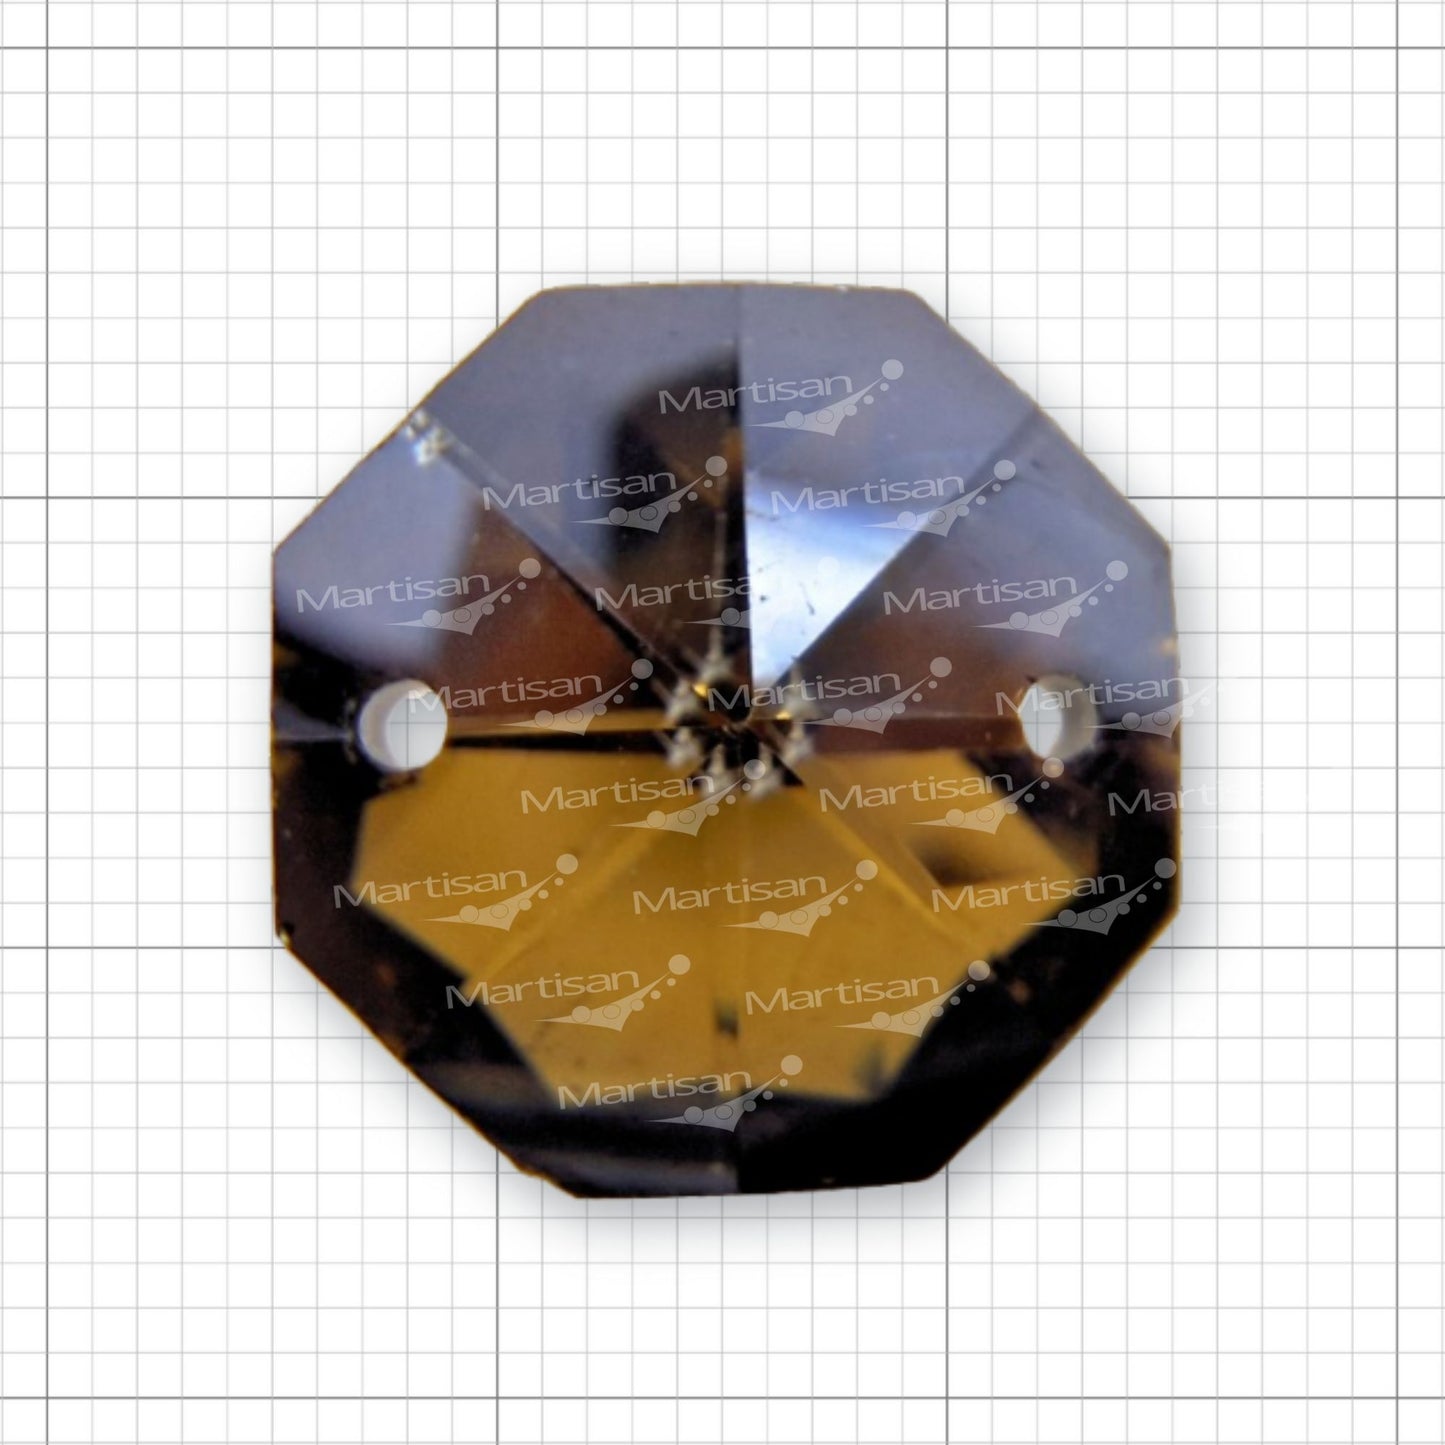 Cristal Octagonal 10mm, 20mm y 26mm